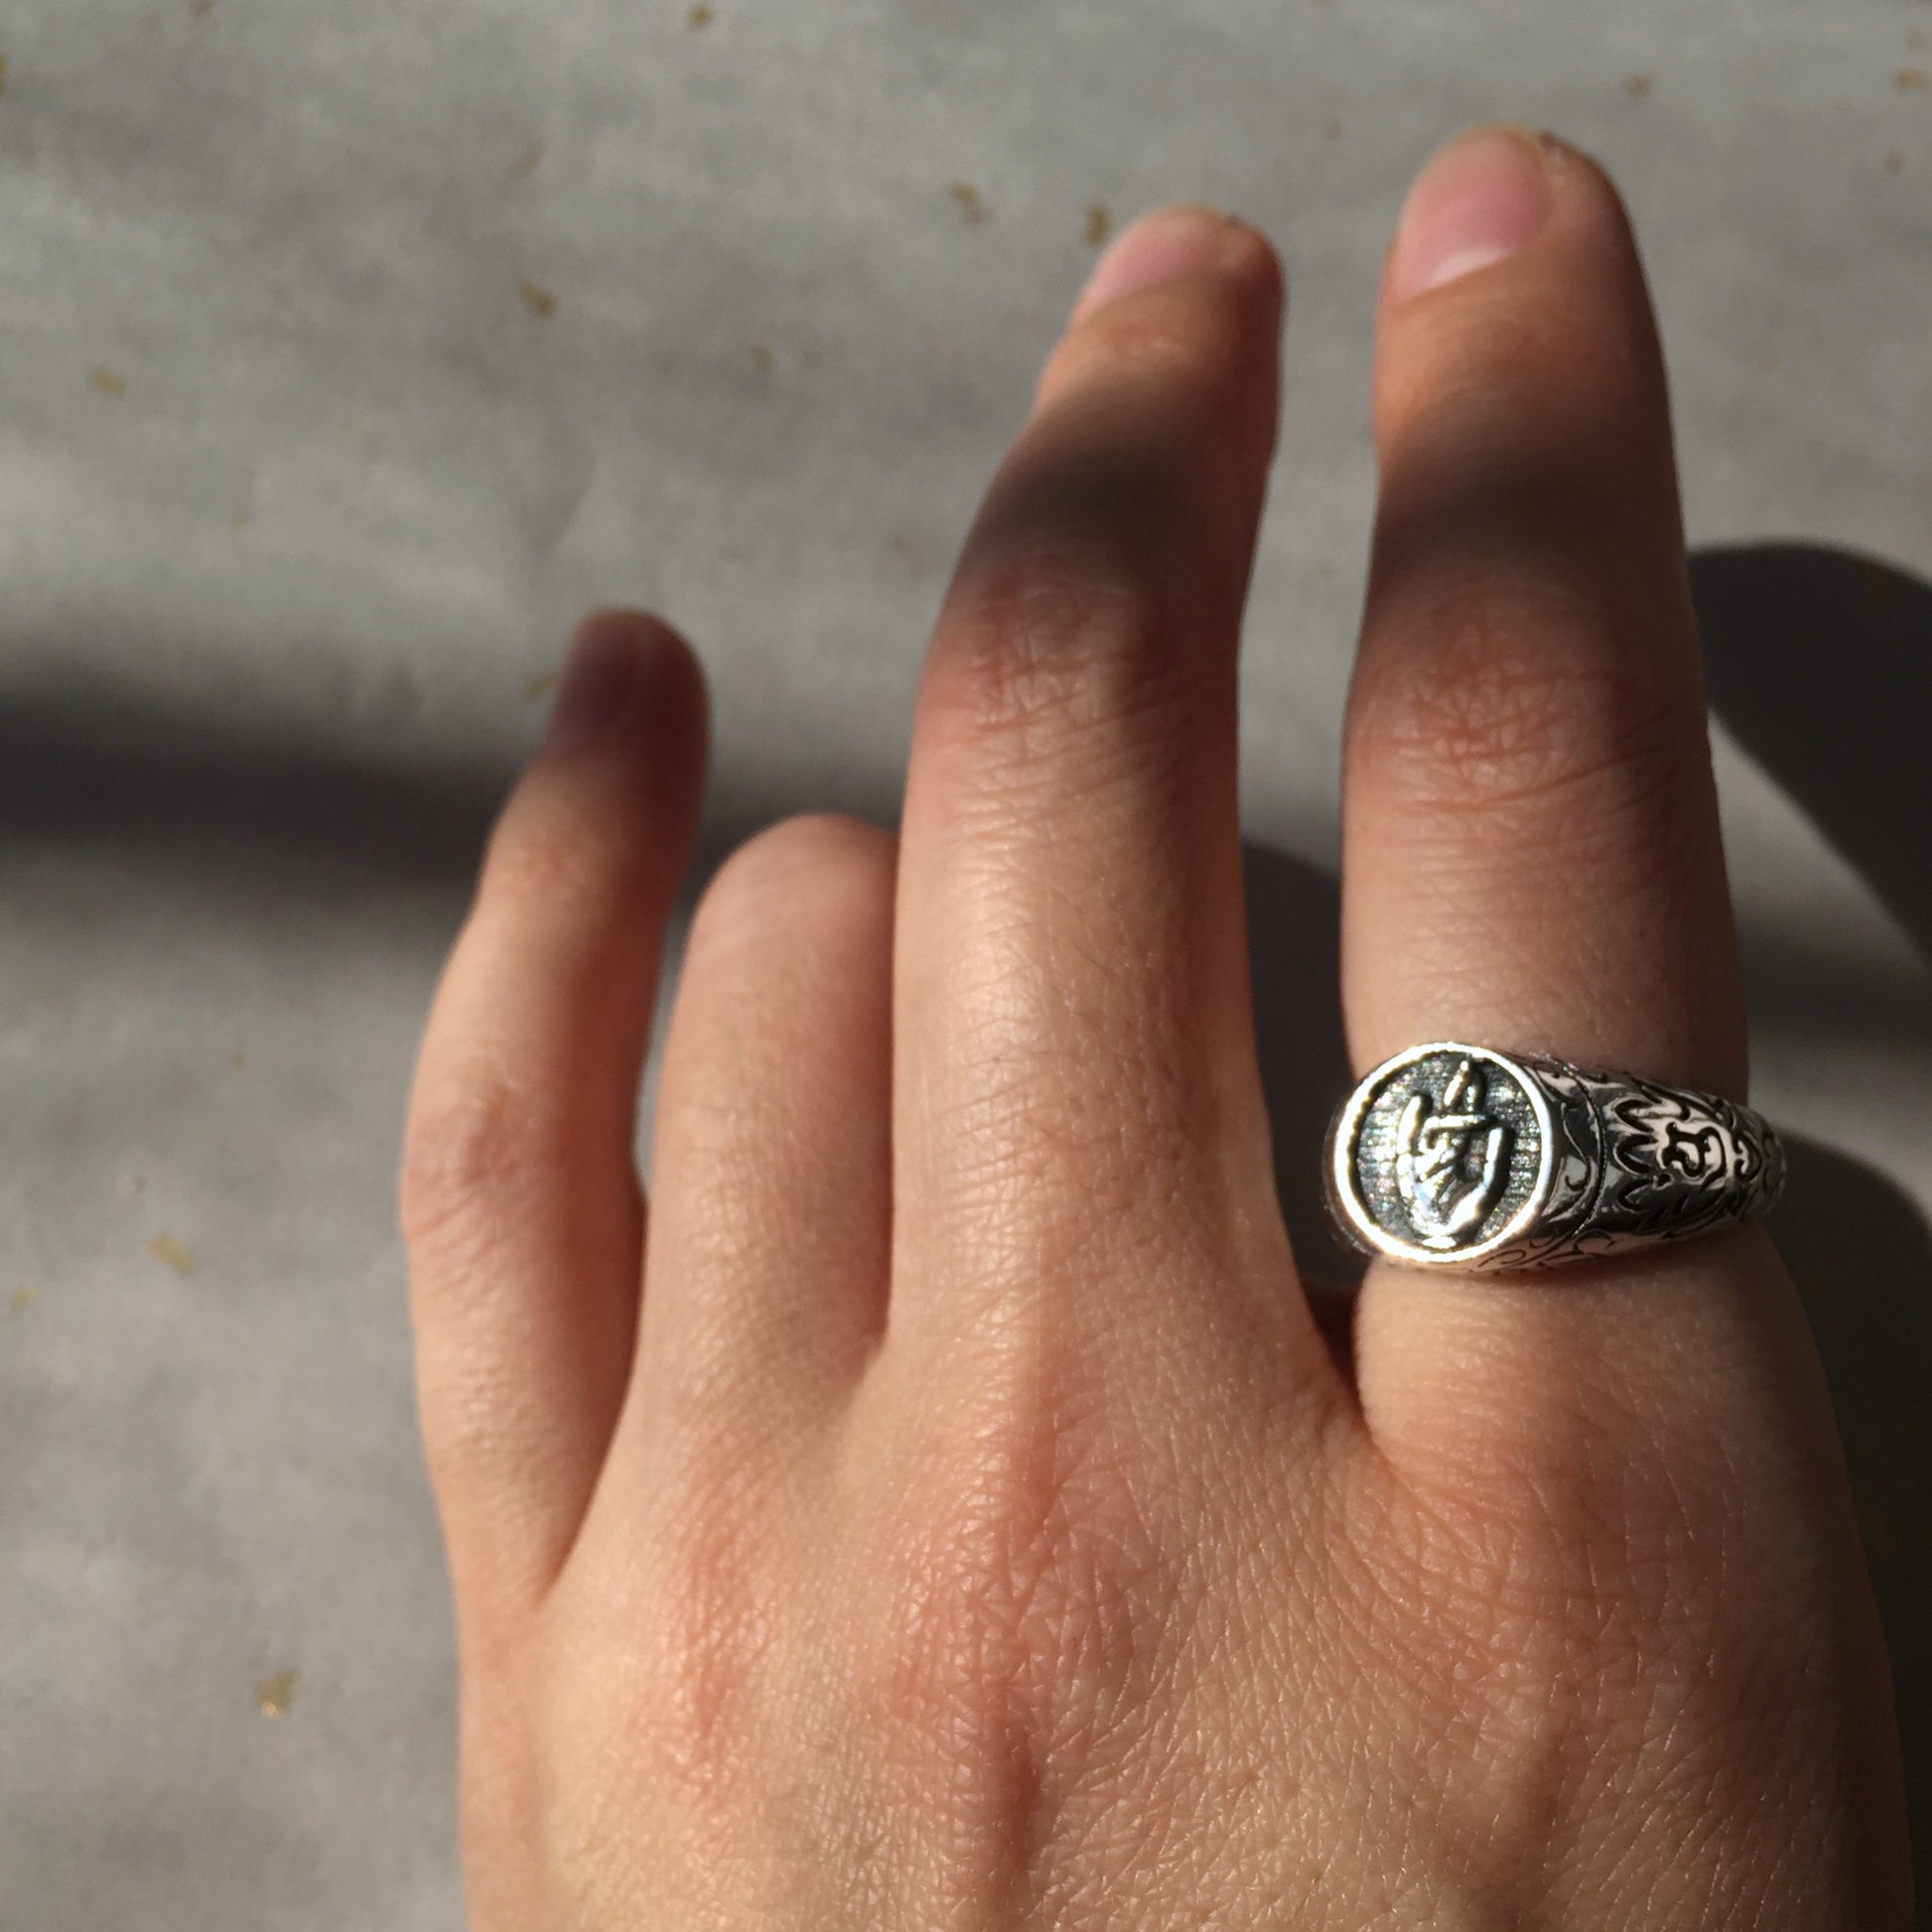 Guan Yin Bodhisattva Praying Hand Sterling Silver Ring, Tibetan Buddhism Ring.